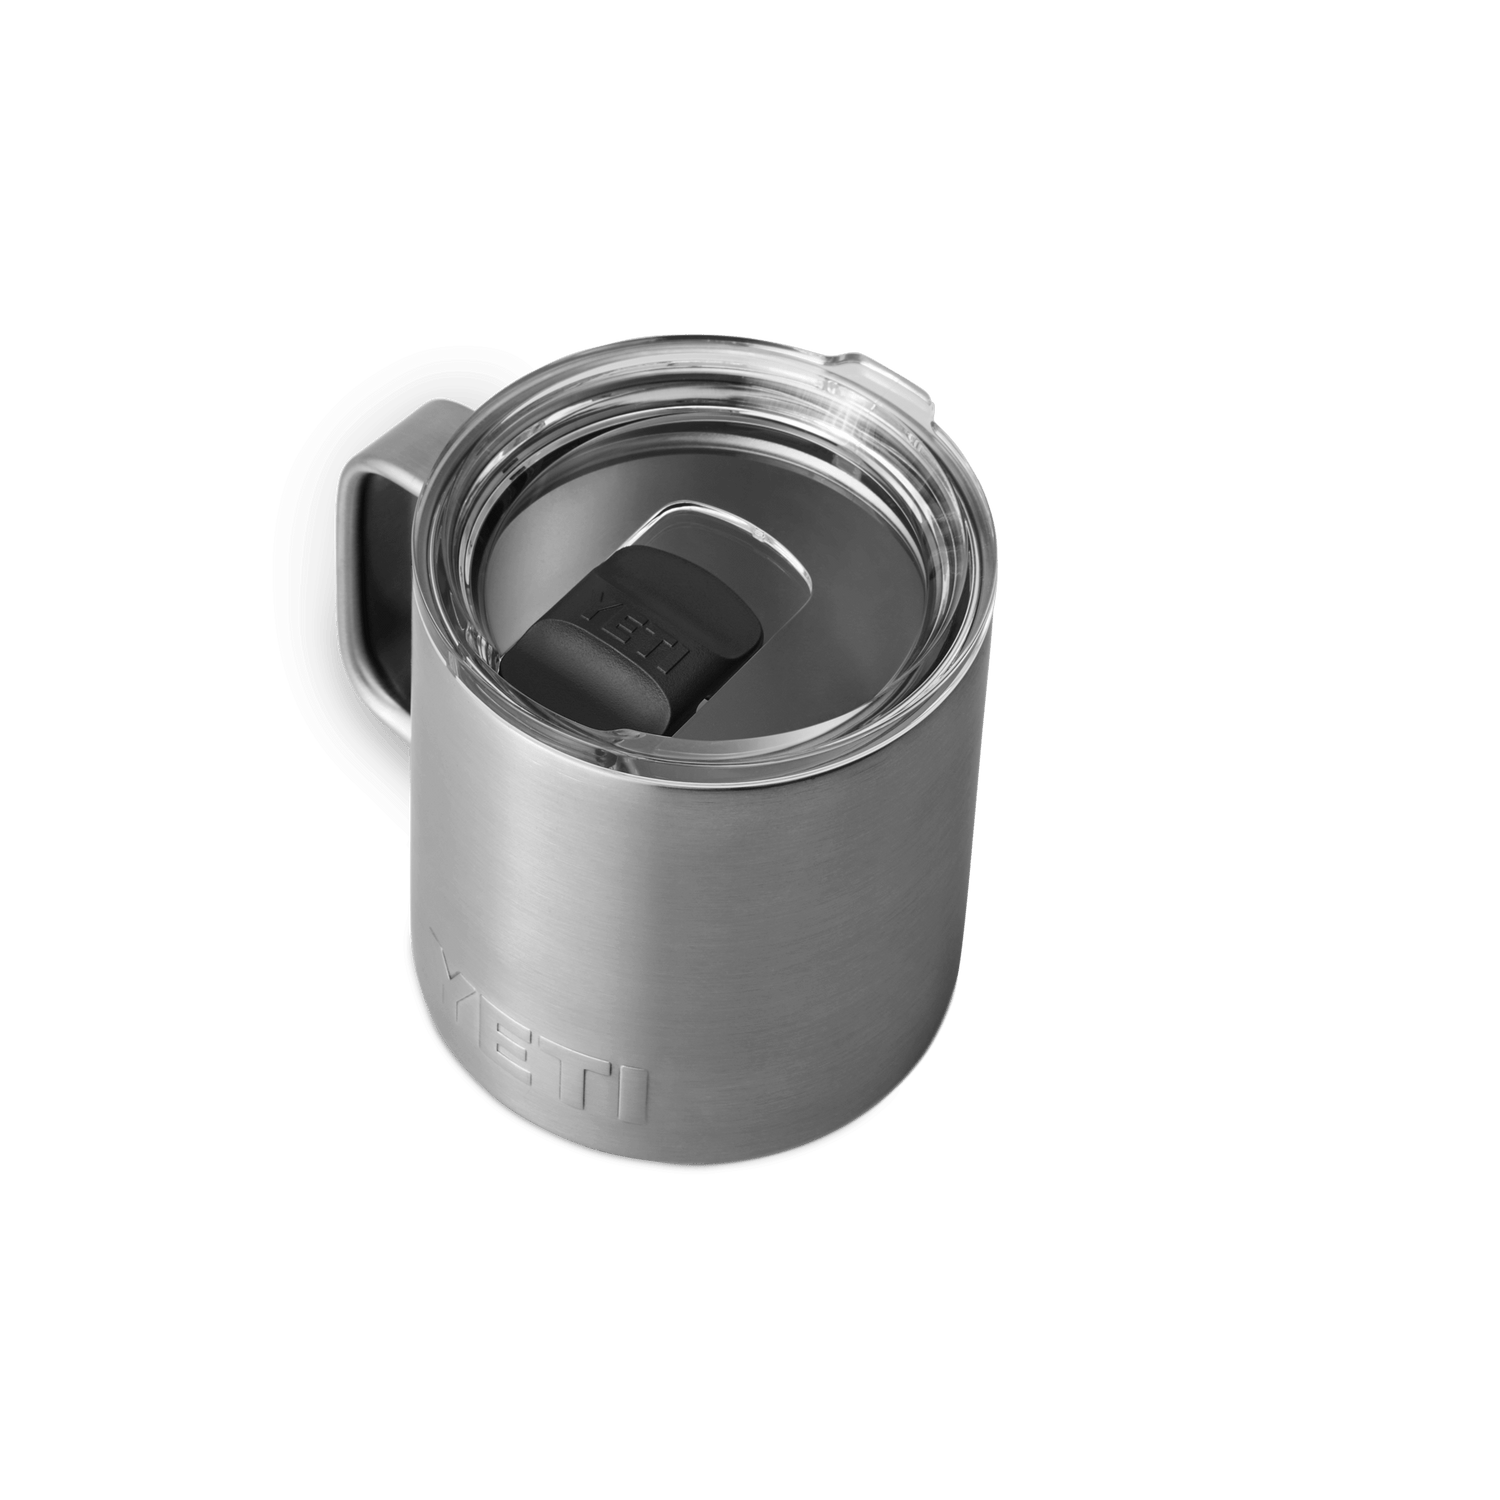 YETI Rambler® 14 oz (414 ml) Mug Stainless Steel